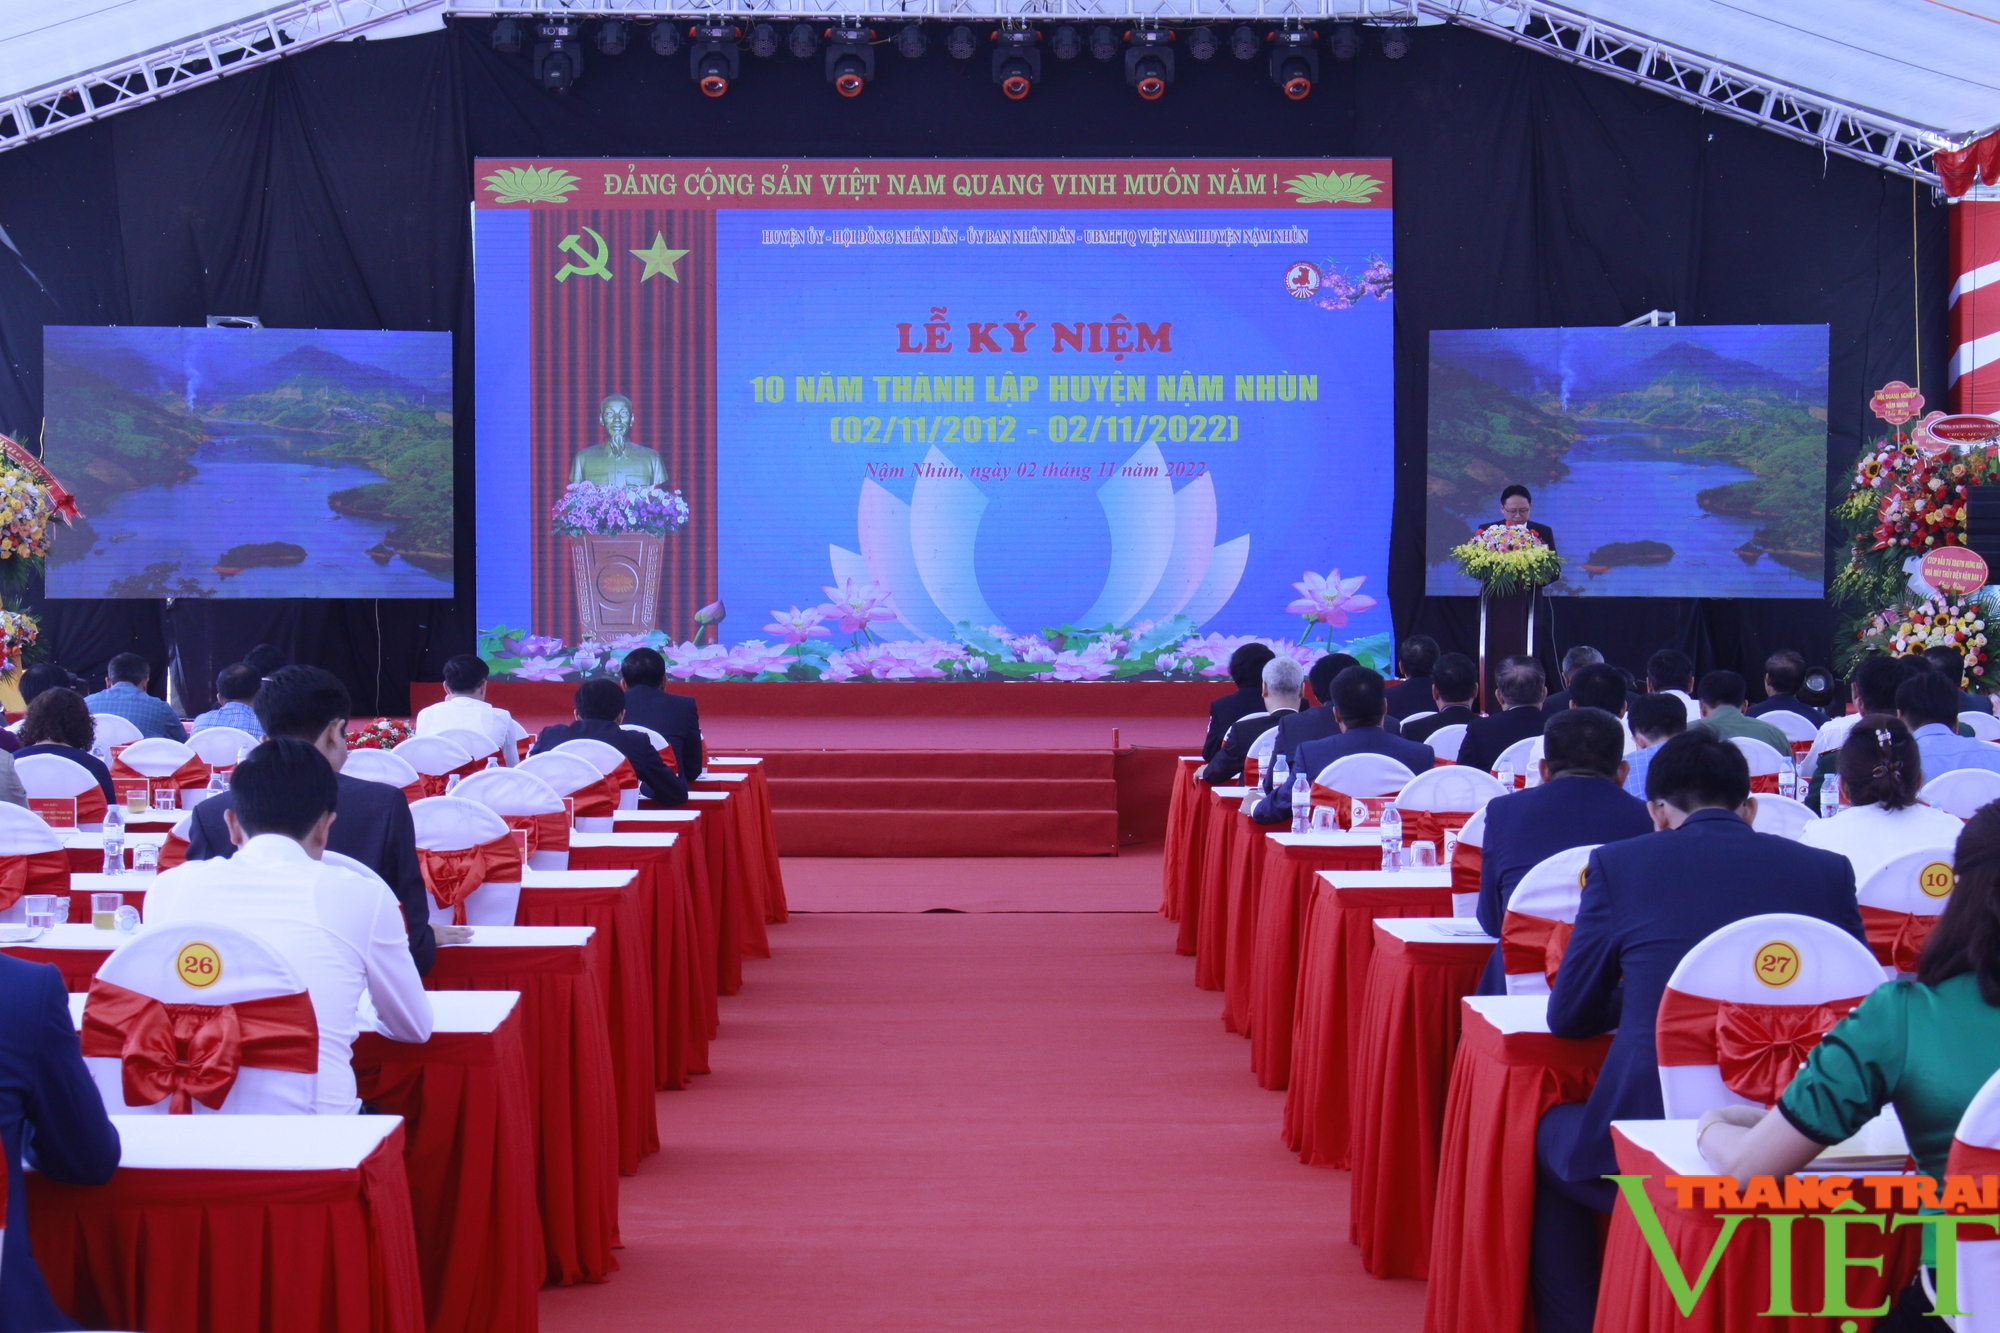 Lai Châu: Kỷ niệm 10 năm thành lập huyện Nậm Nhùn - Ảnh 1.